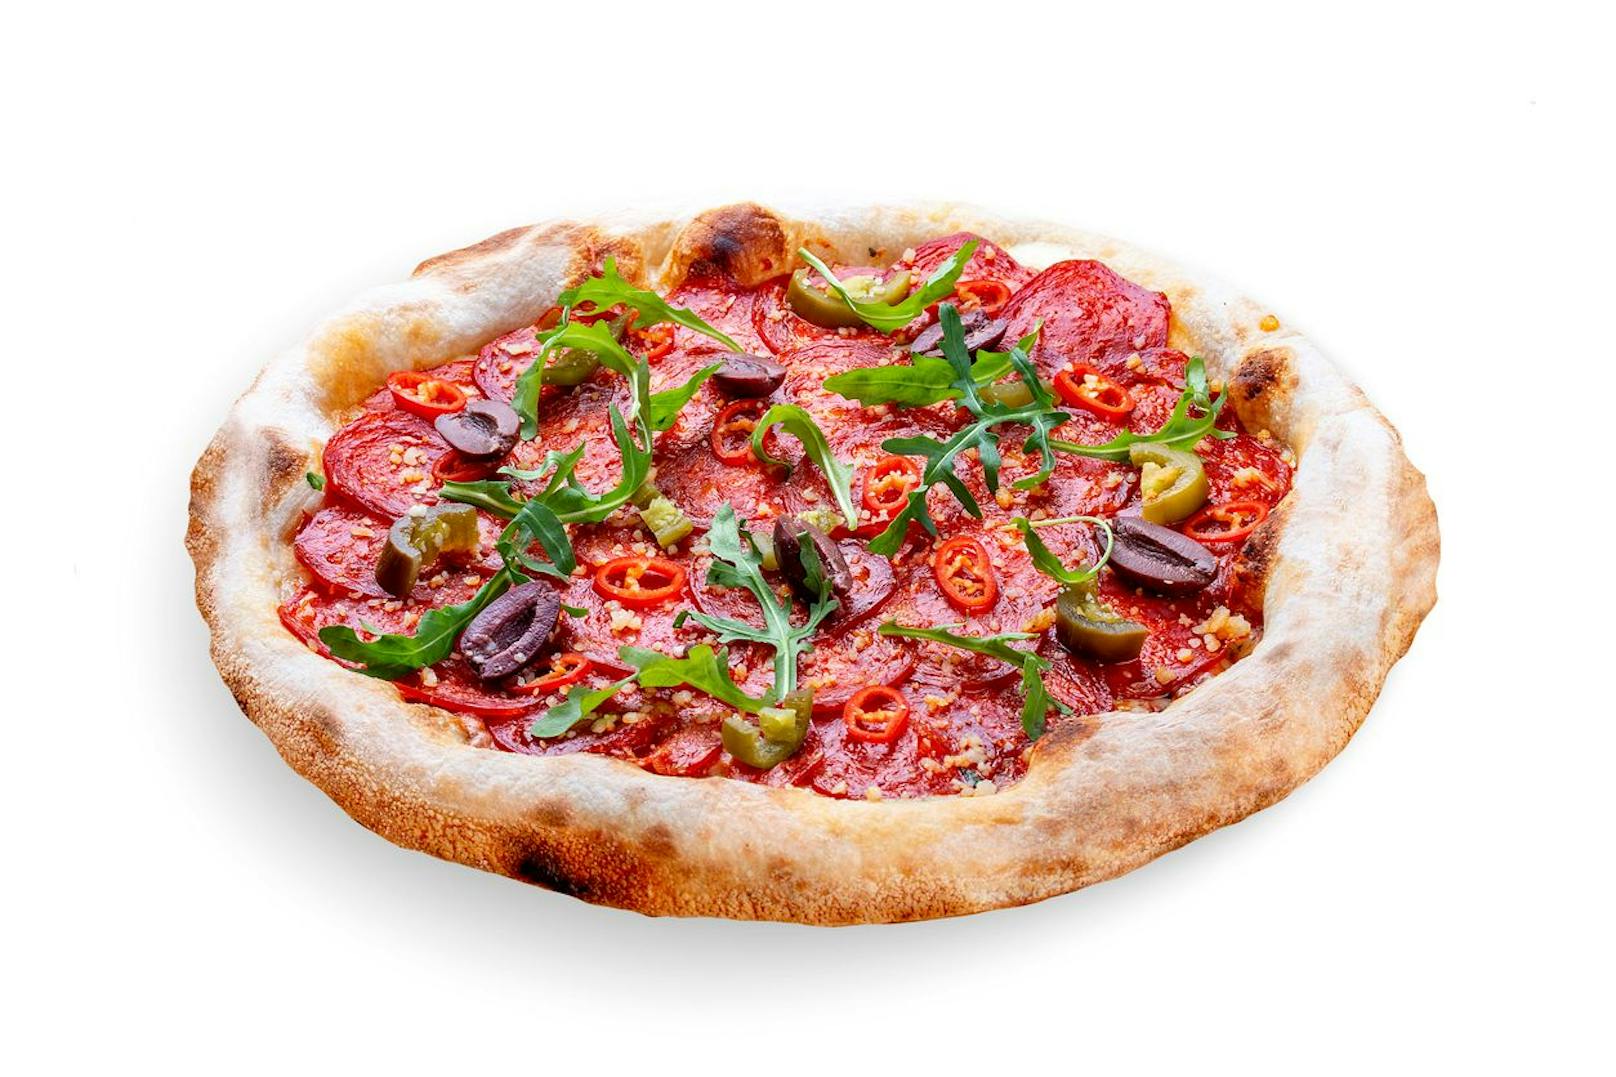 Bei der Bestell-Vorliebe der scharfen Pizza Diavolo gaben 23 Prozent der Männer an, diese Pizza sehr oft zu bestellen, wohingegen nur 11 Prozent der befragten Frauen das Gleiche angaben.